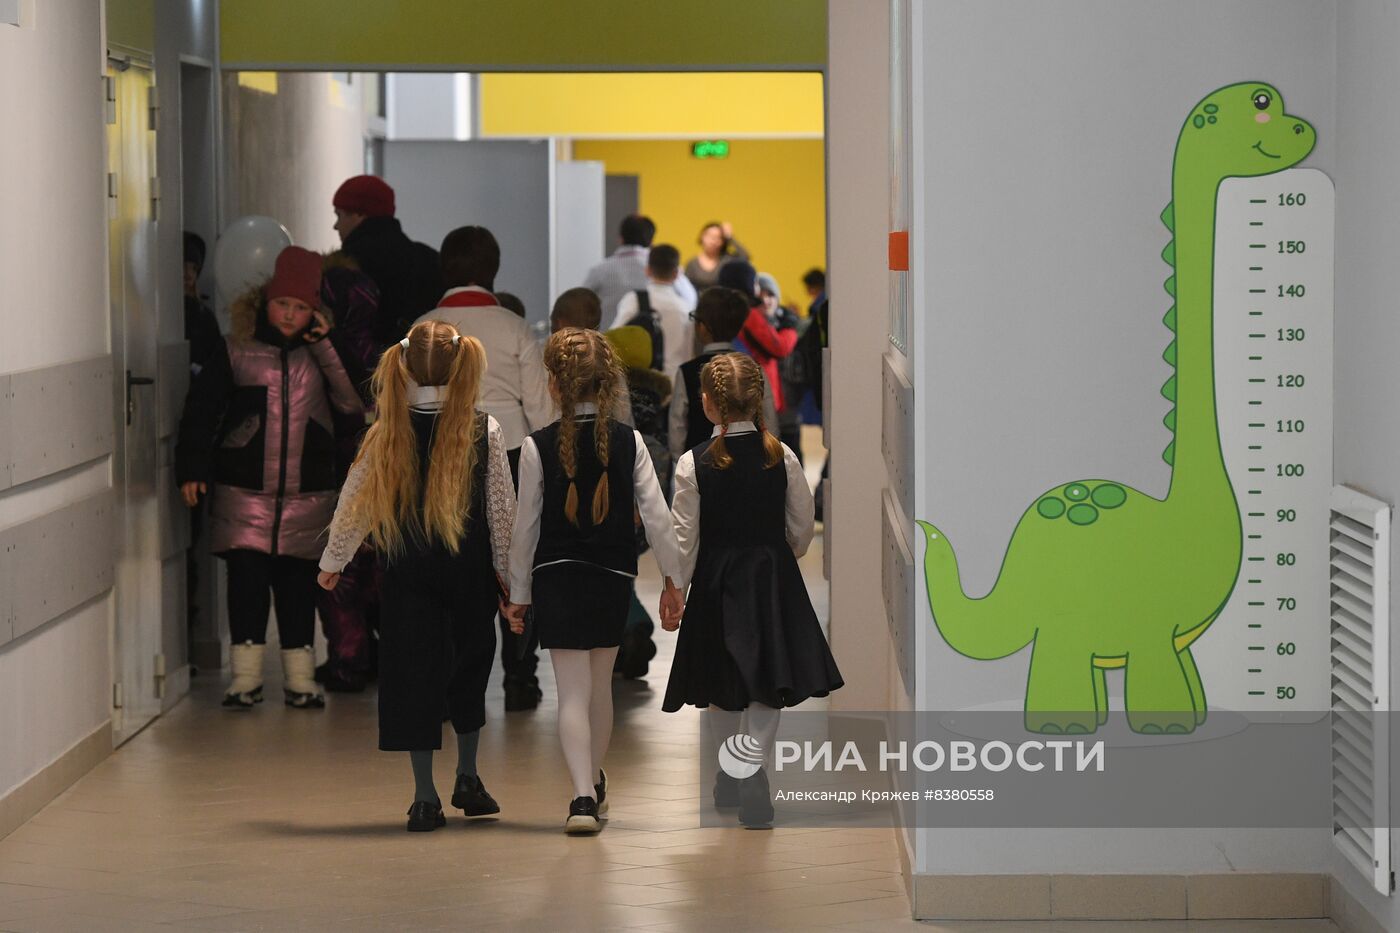 Открытие нового образовательного центра "Восход" в Новосибирской области